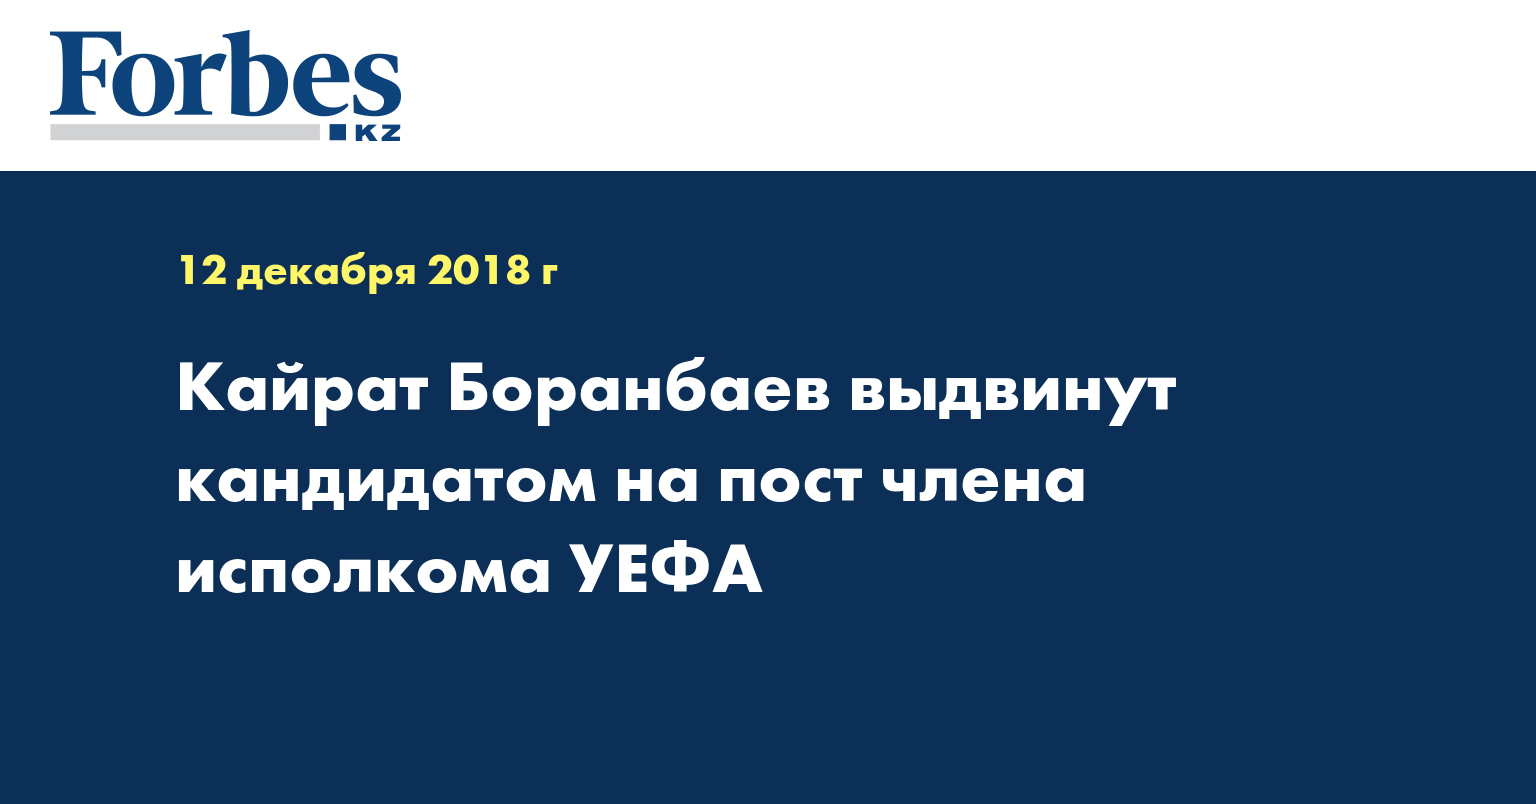 Кайрат Боранбаев выдвинут кандидатом на пост члена исполкома УЕФА